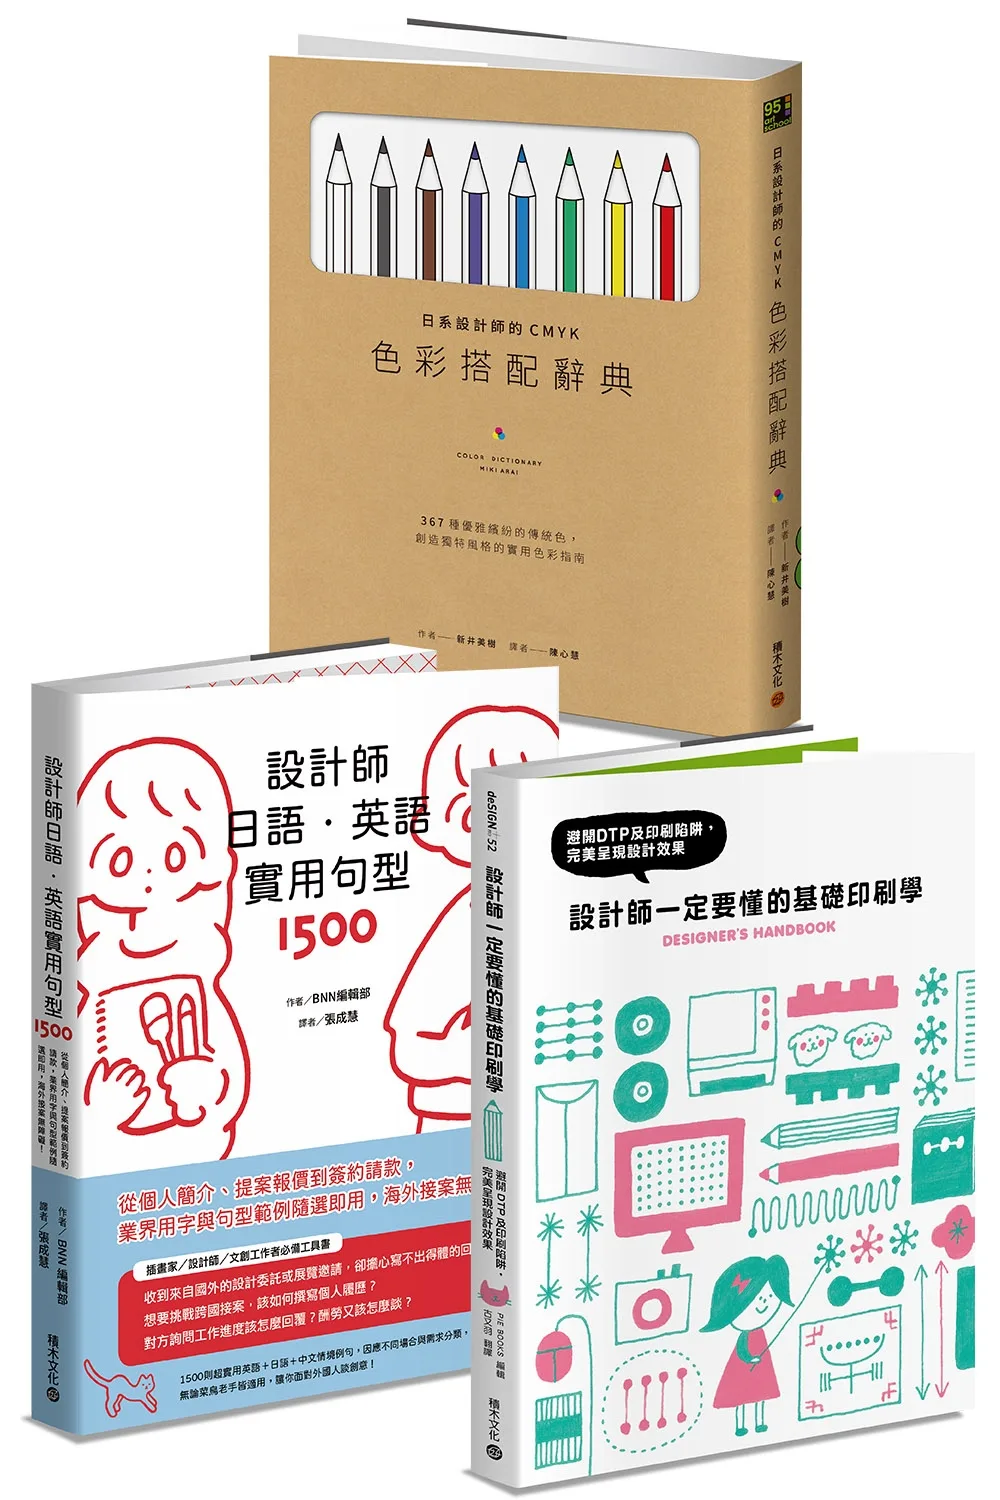 平面設計師必備實用套書：《設計師一定要懂的基礎印刷學》+《日系設計師的CMYK色彩搭配辭典》+《設計師日語．英語實用句型1500》